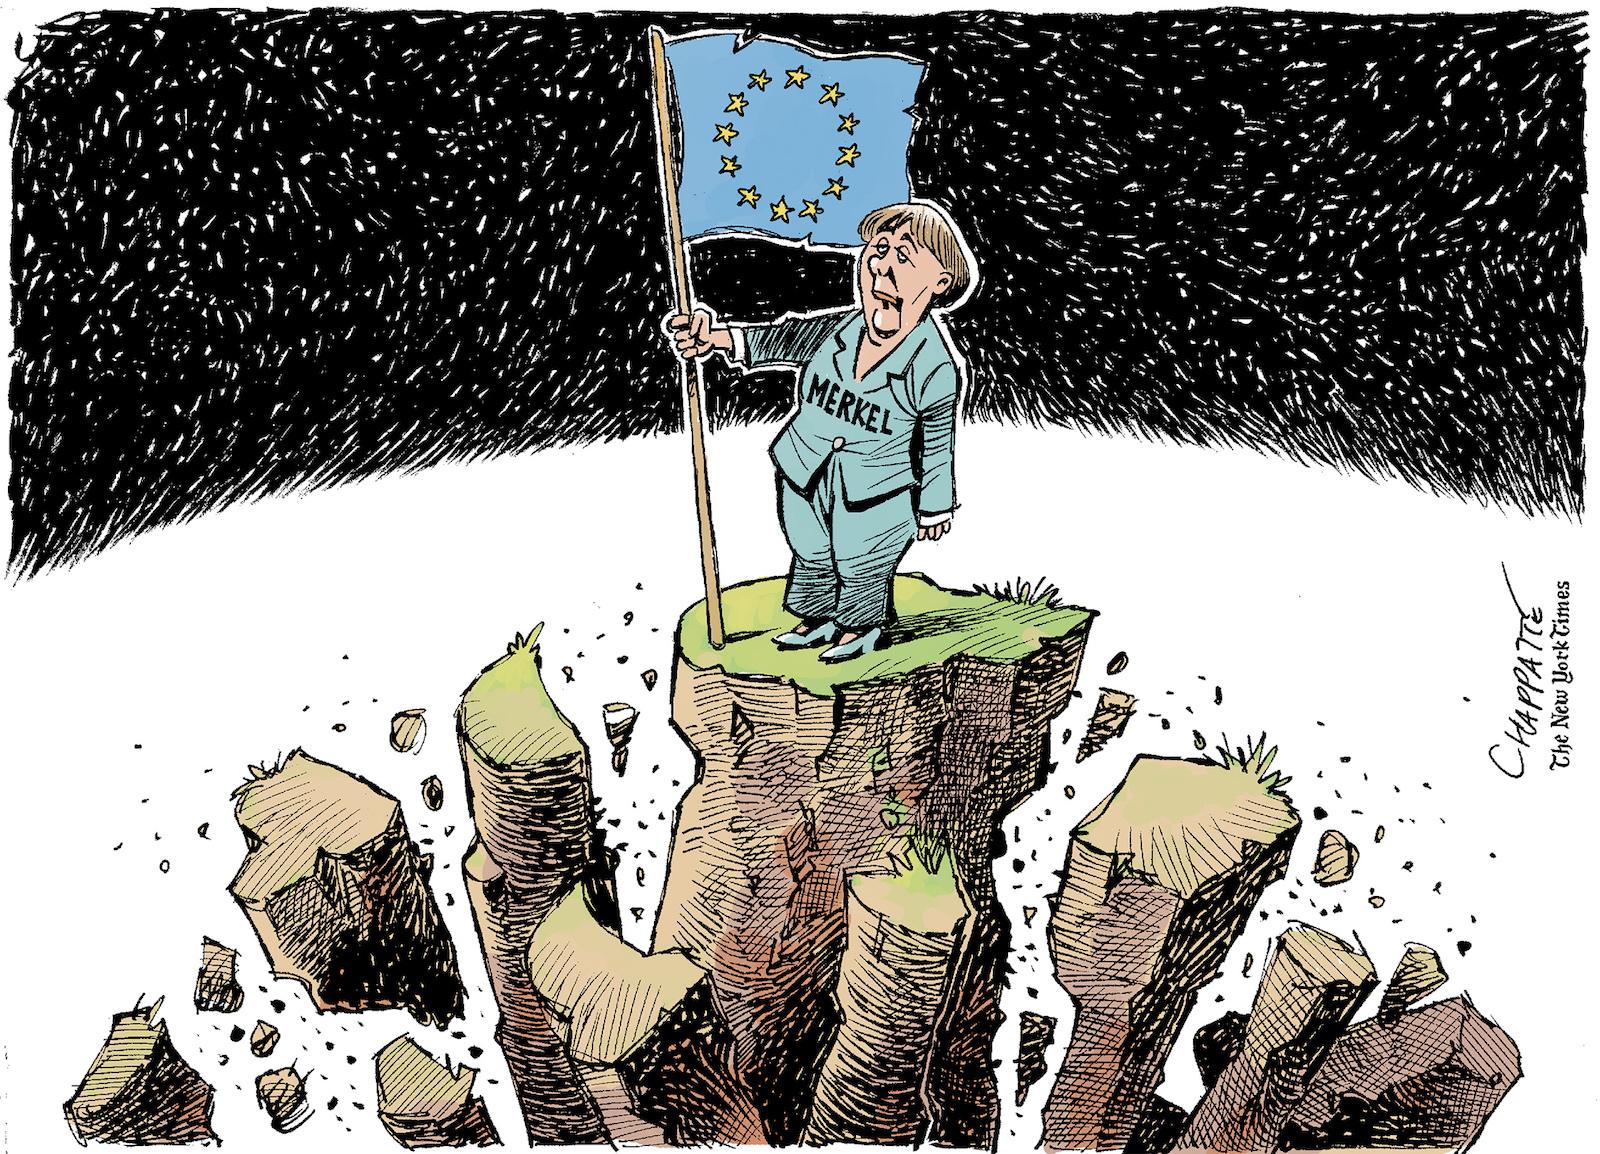 Merkel,toujours debout